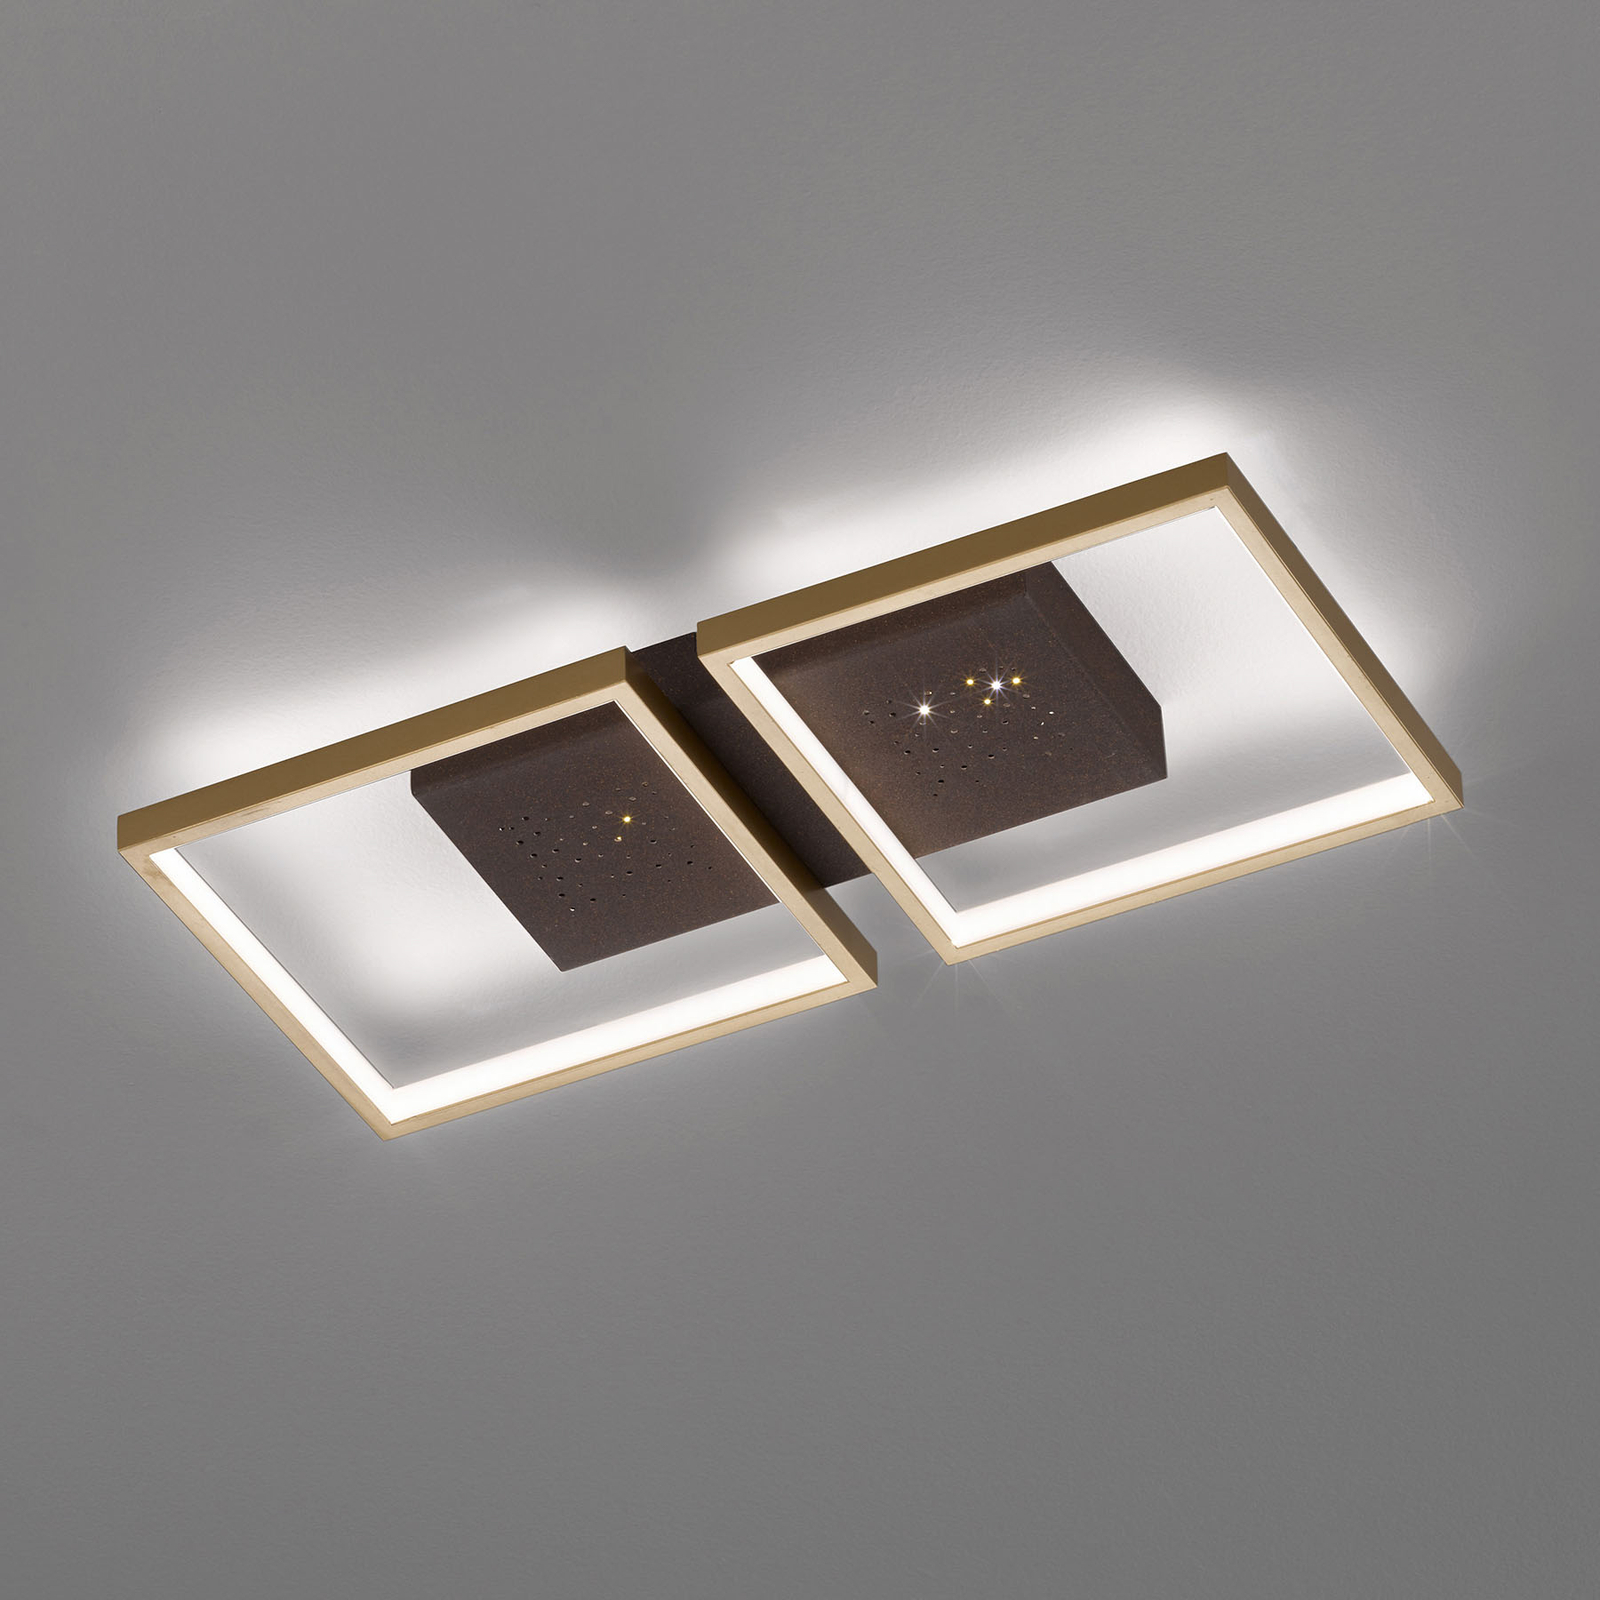 Lampa sufitowa LED Pix, brązowa, 2-pkt. 54x25cm